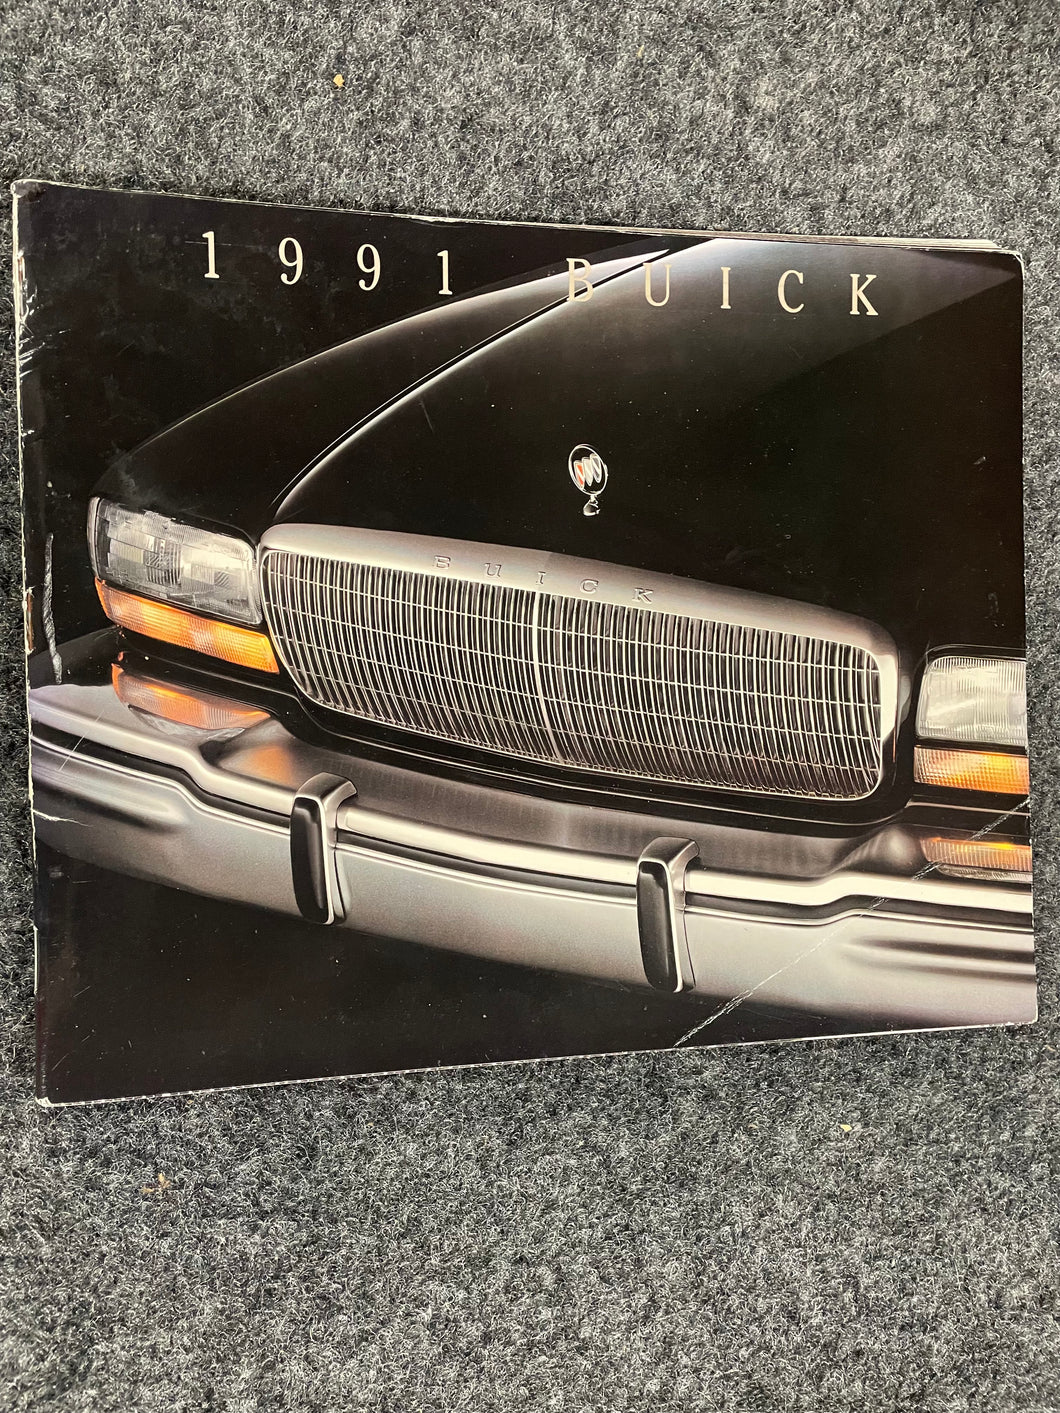 1991 Buick Catalog